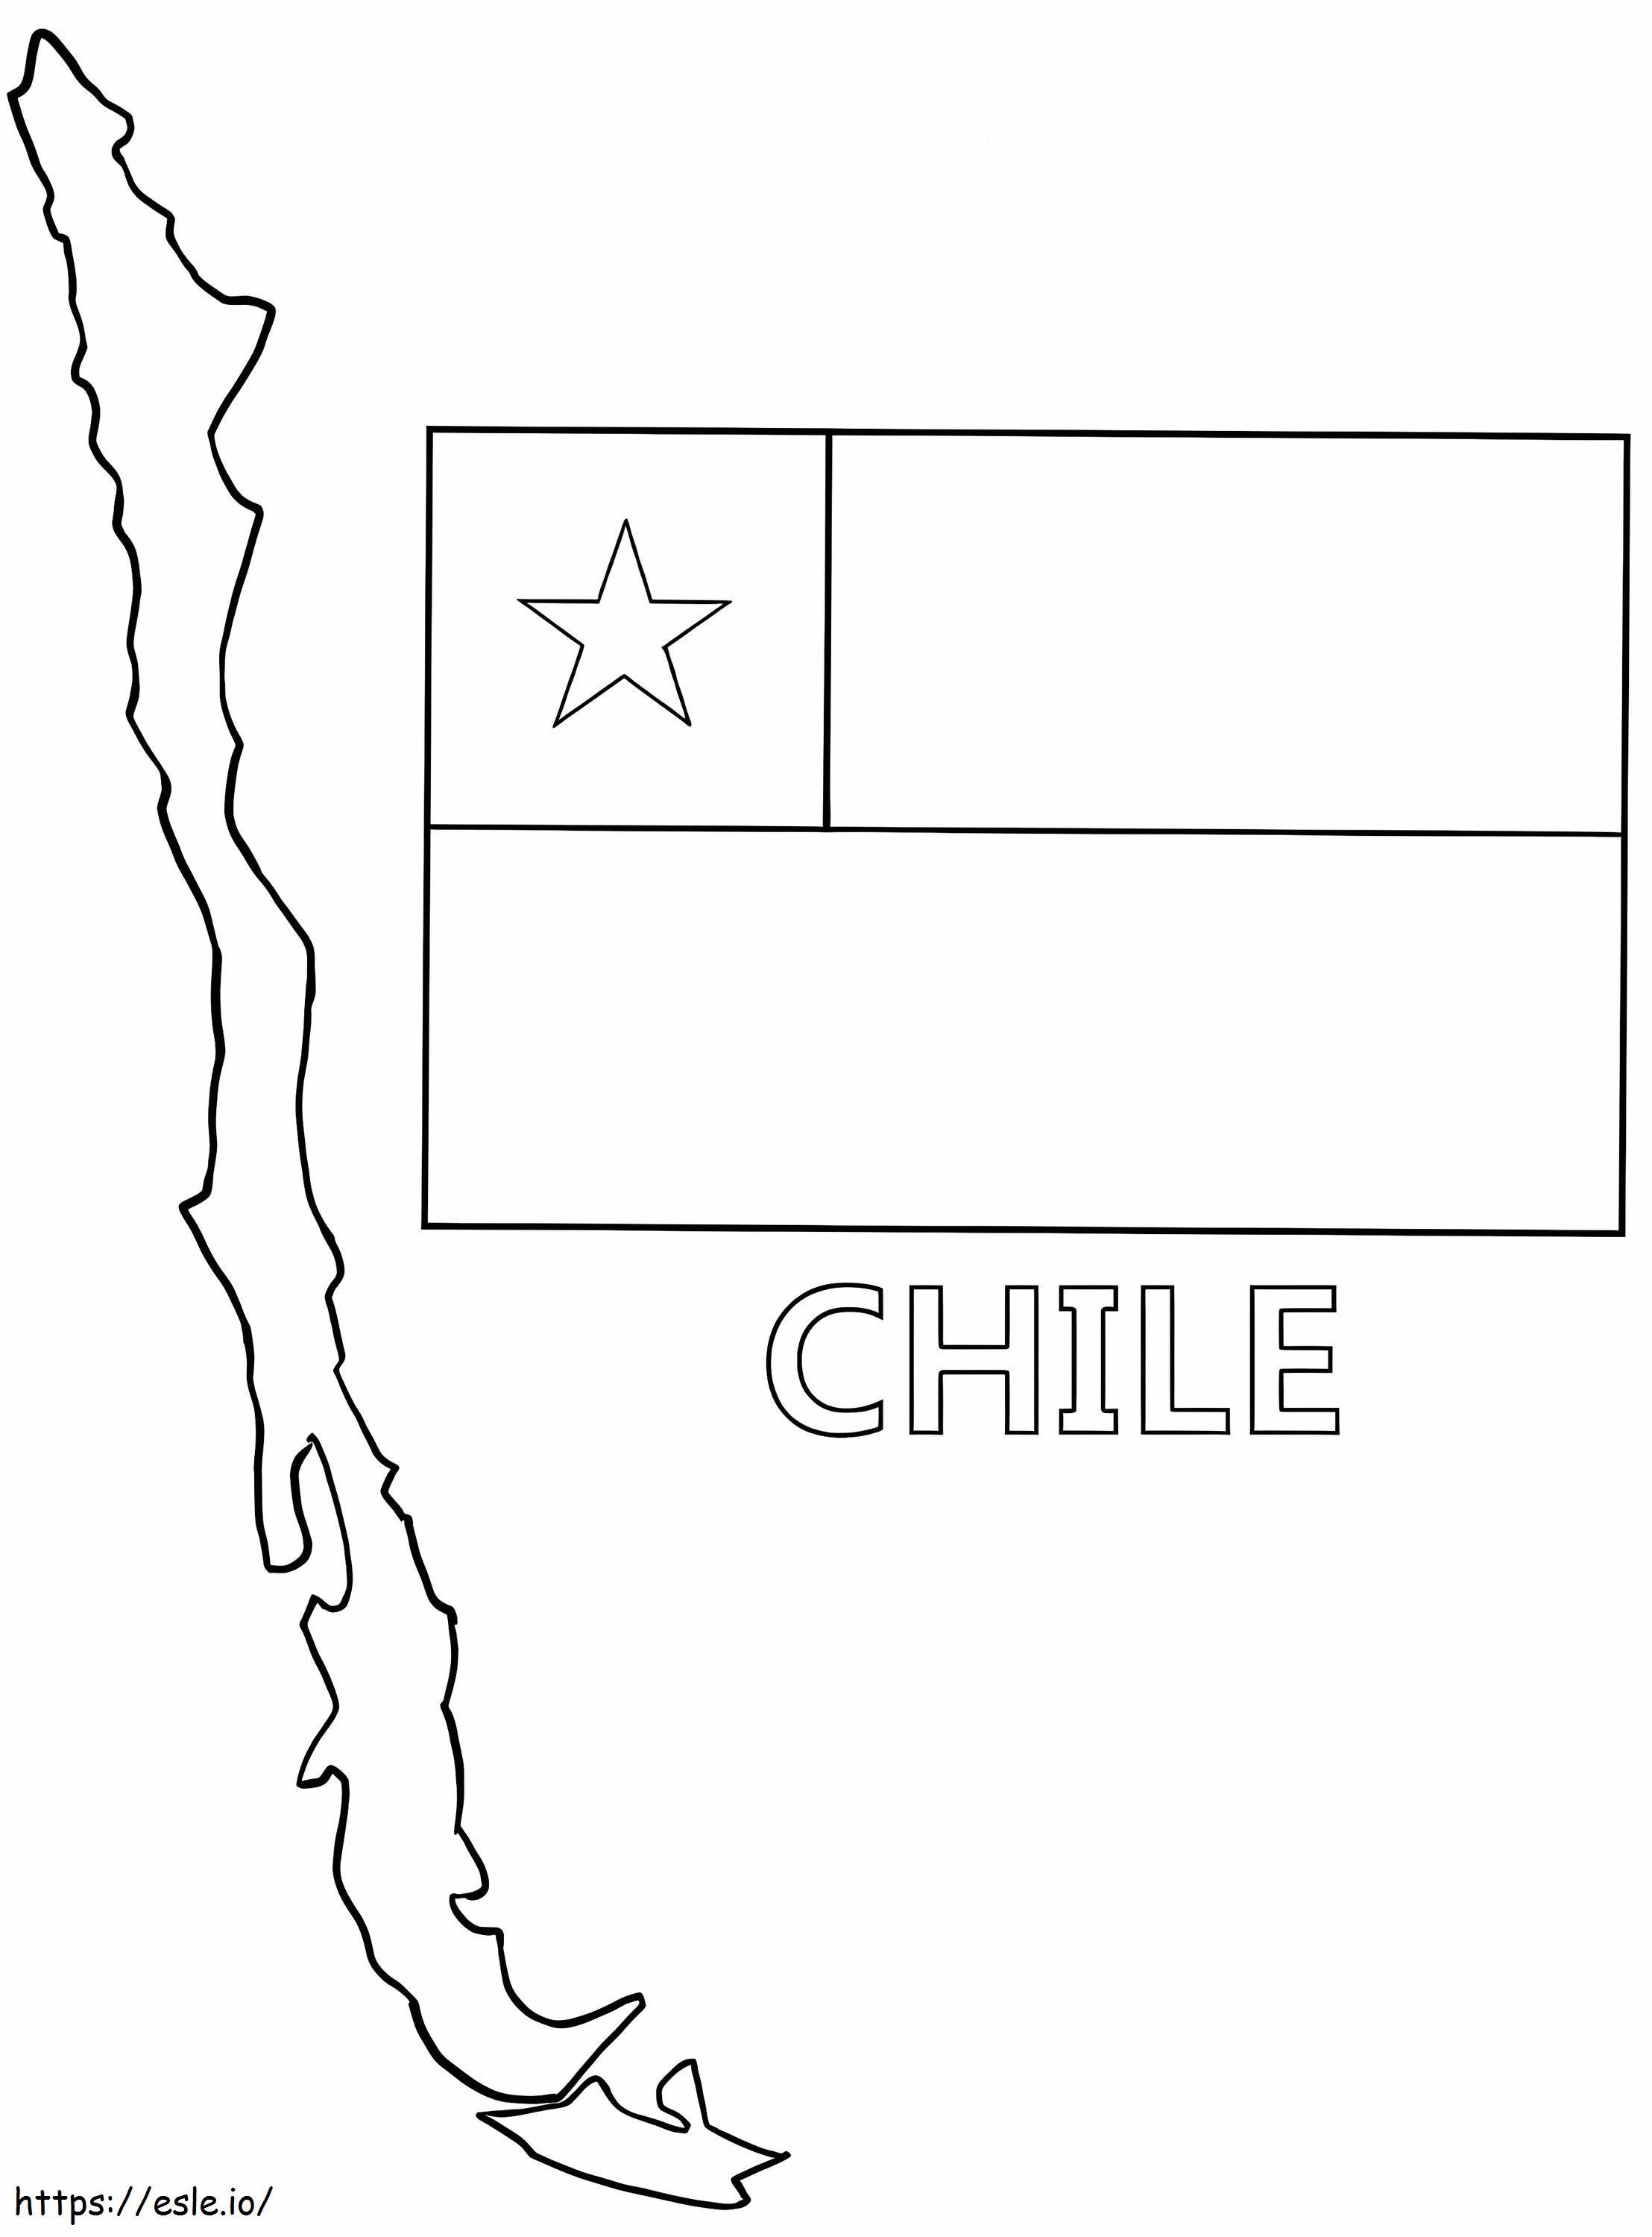 Mappa e bandiera del Cile da colorare